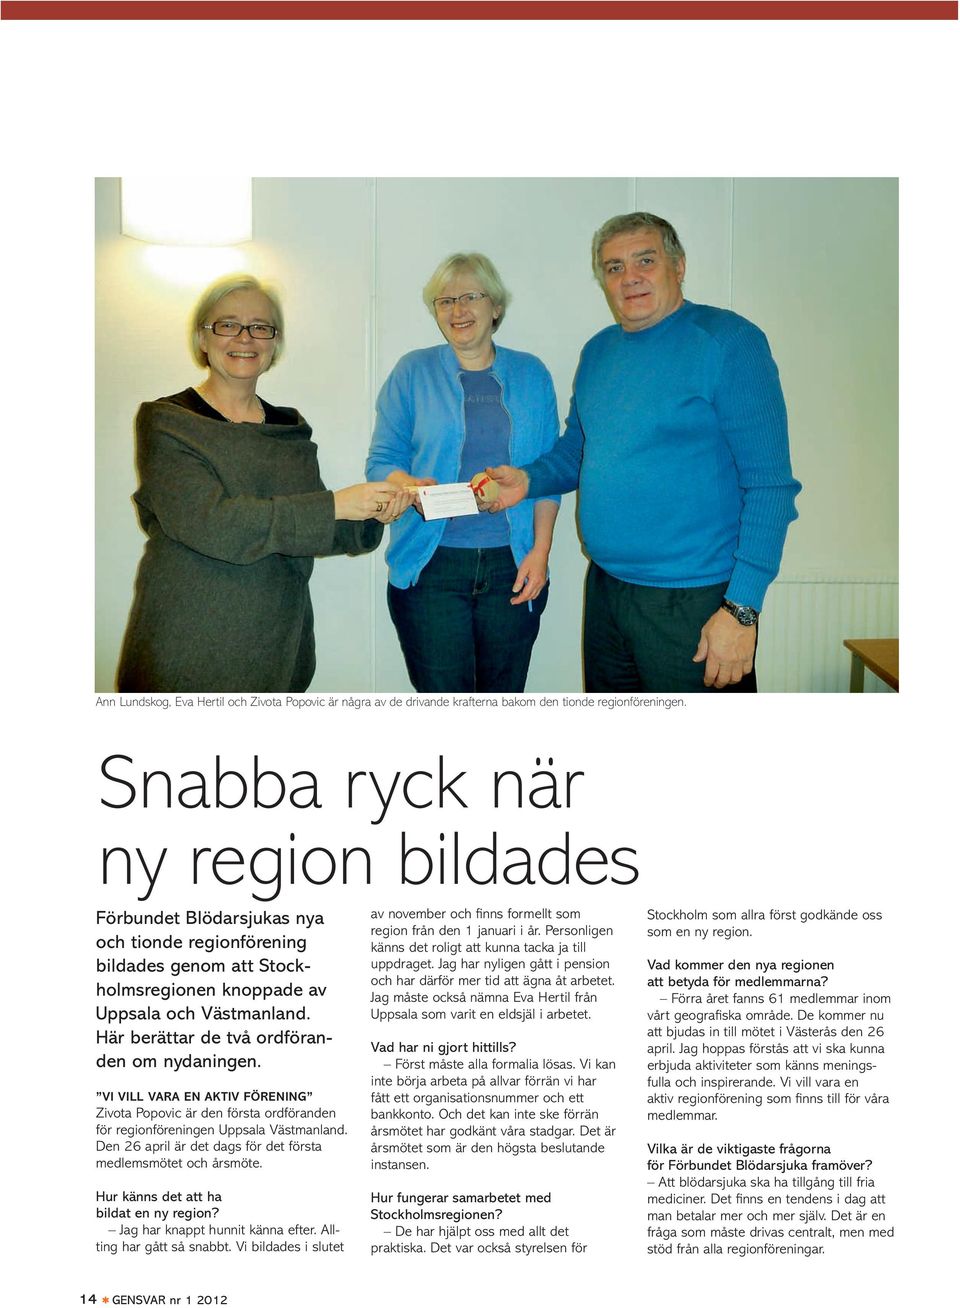 Här berättar de två ordföranden om nydaningen. Vi vill vara en aktiv förening Zivota Popovic är den första ordföranden för regionföreningen Uppsala Västmanland.